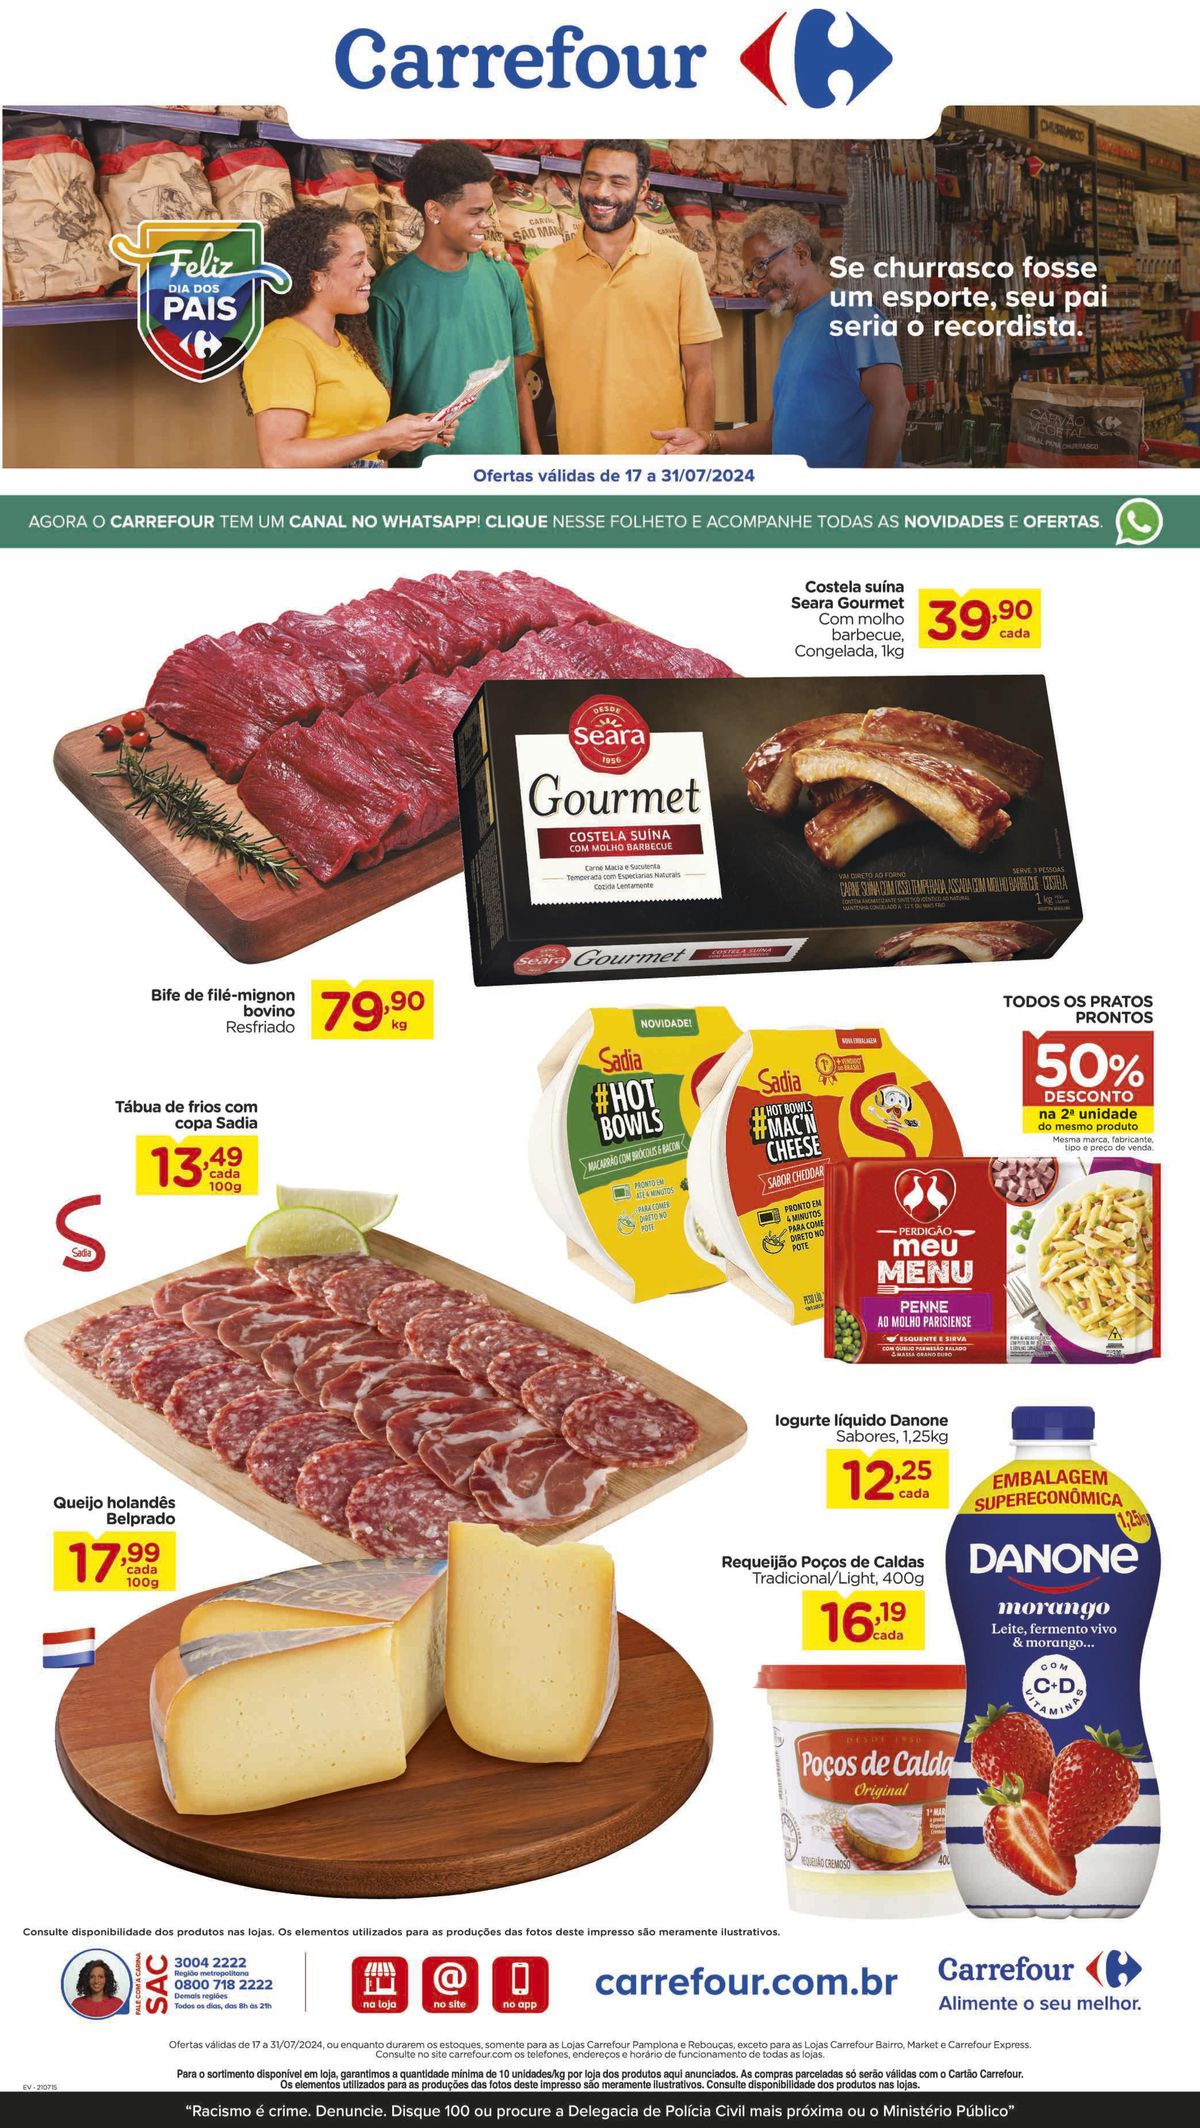 Ofertas de Supermercado Carrefour: Costela suína, Bife de filé-mignon, Queijo holandês e mais